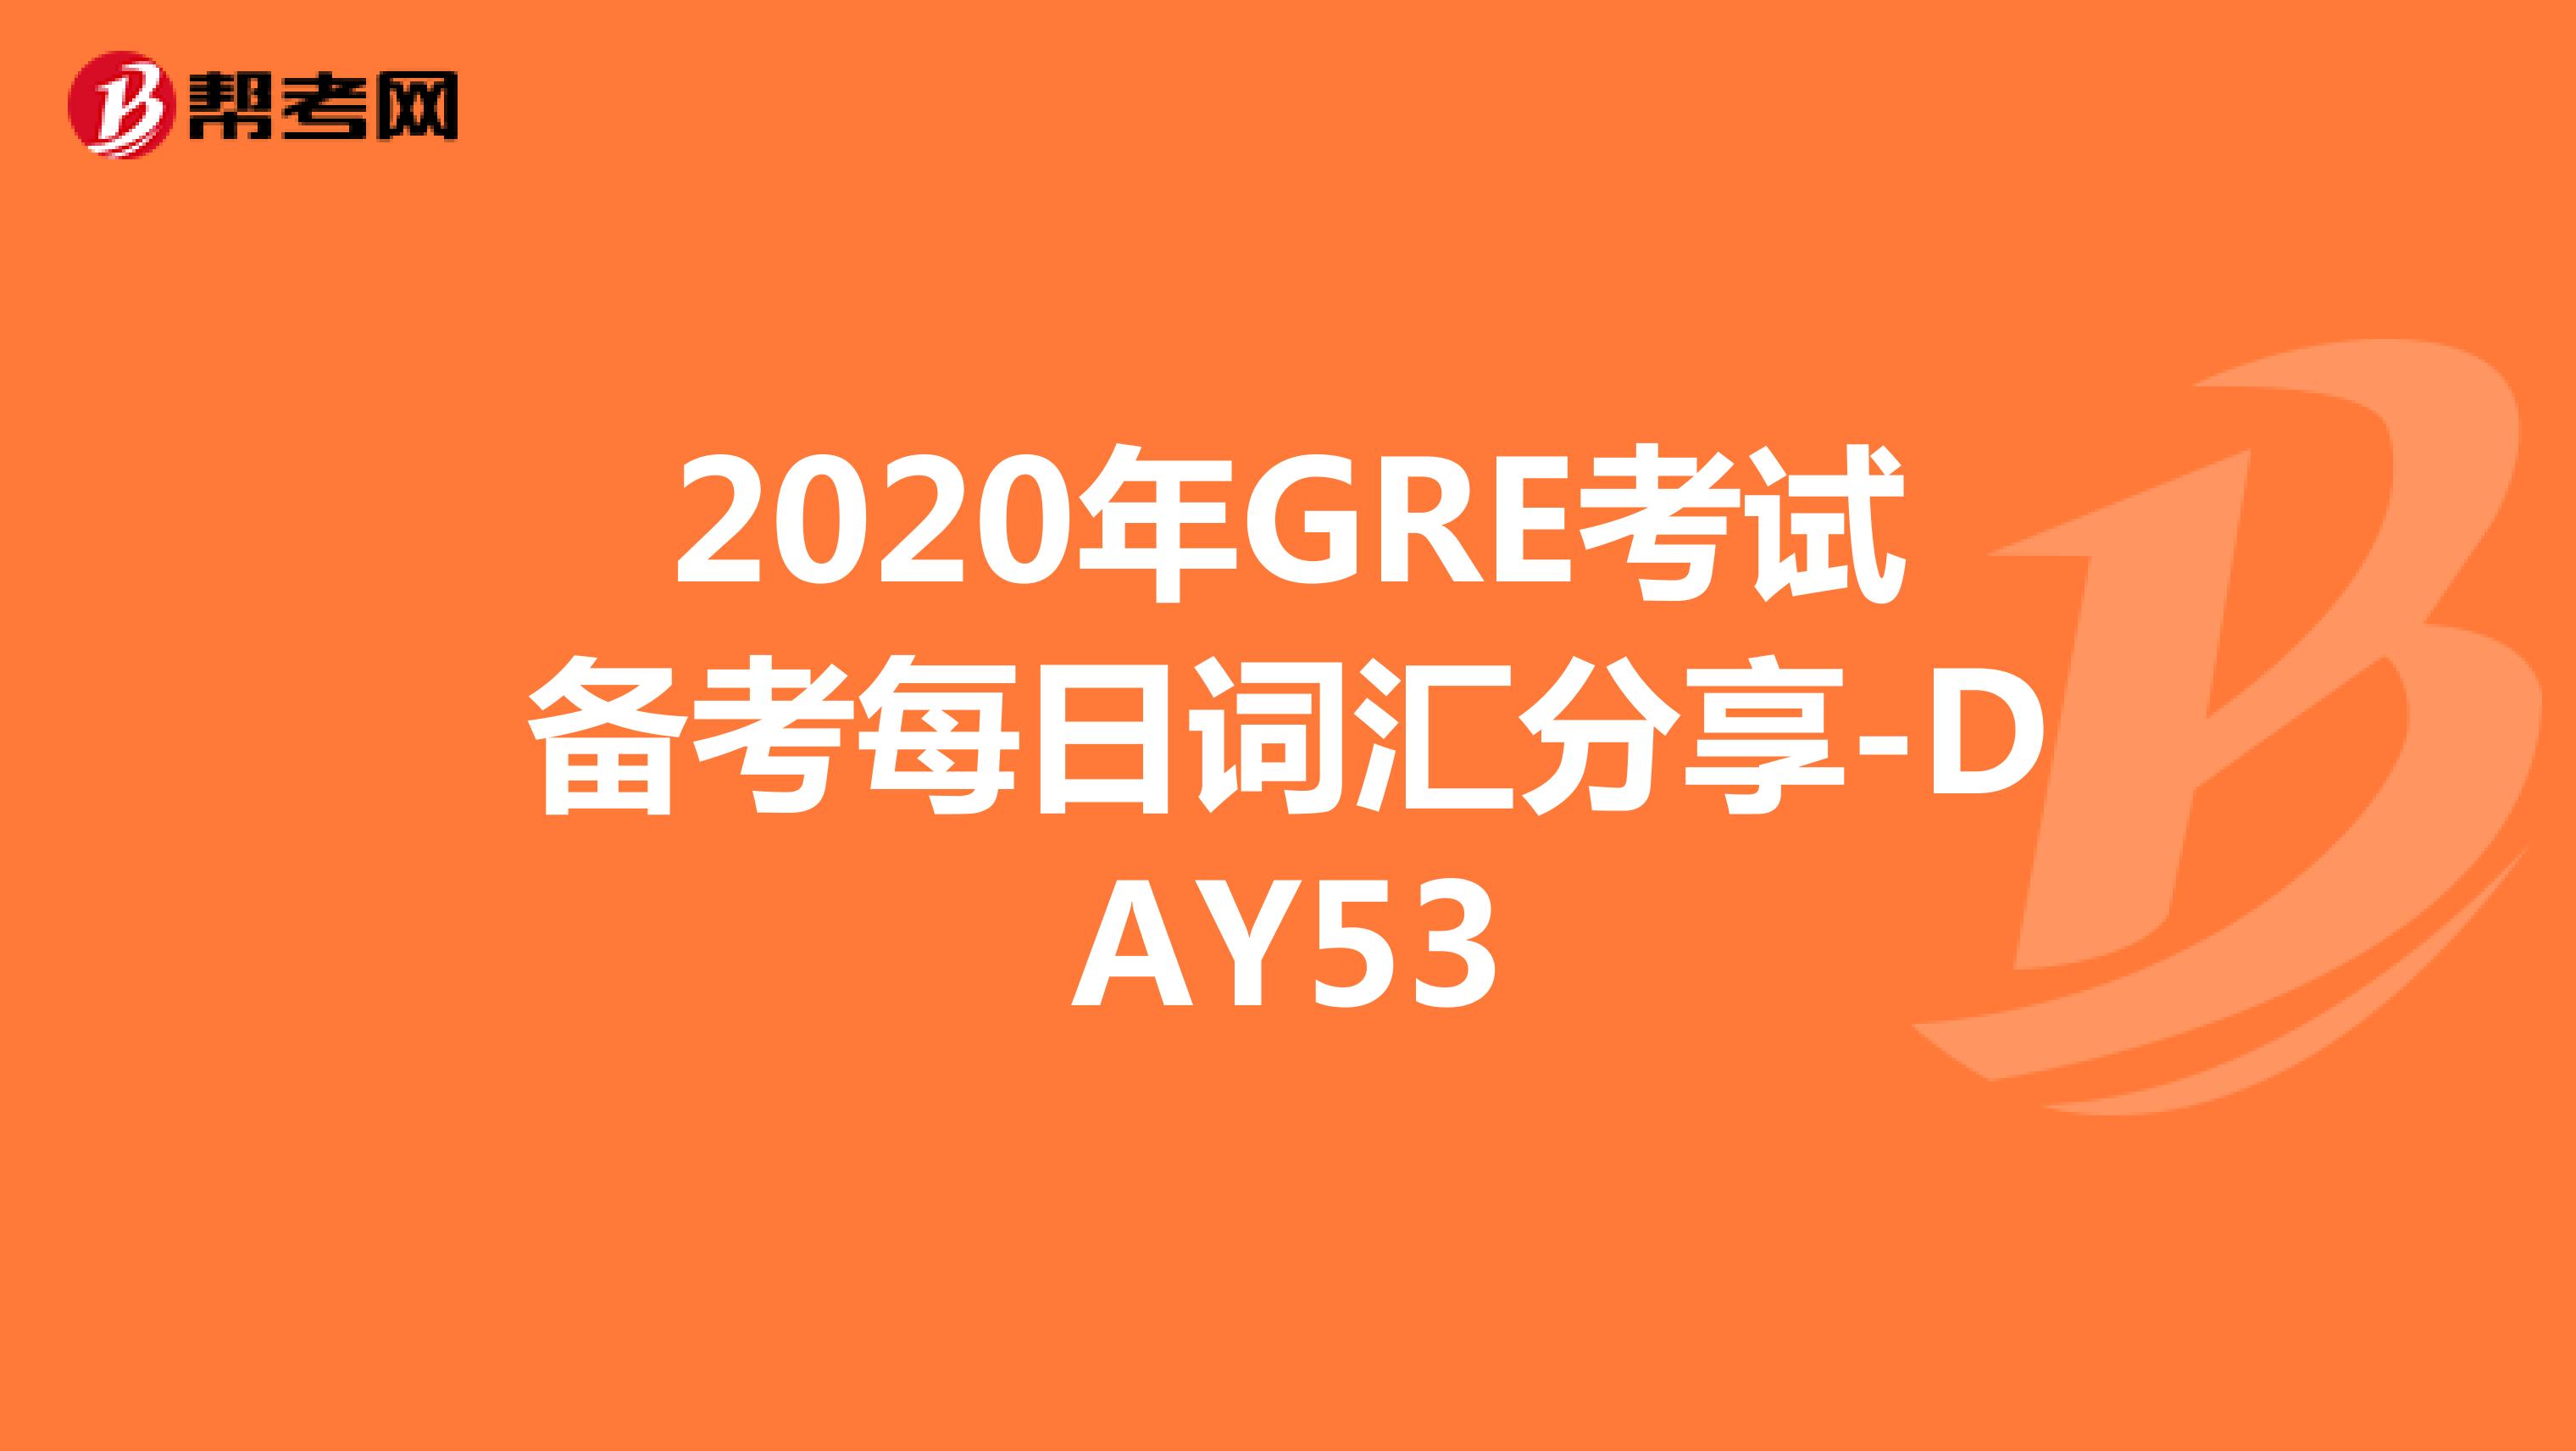 2020年GRE考试备考每日词汇分享-DAY53